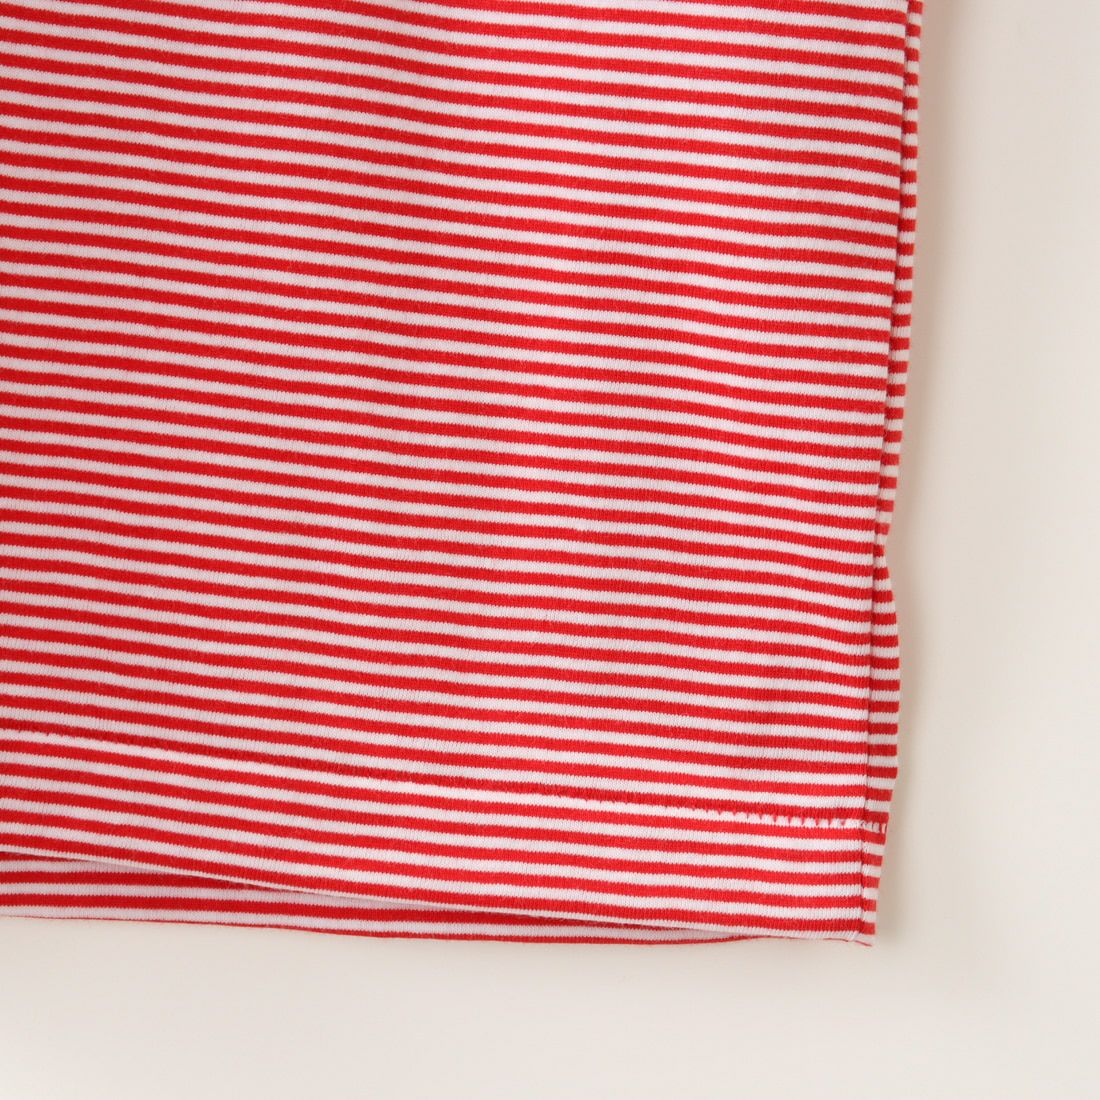 DANTON [ダントン] インナーTシャツ [DT-C0195CVT] RED/WHITE